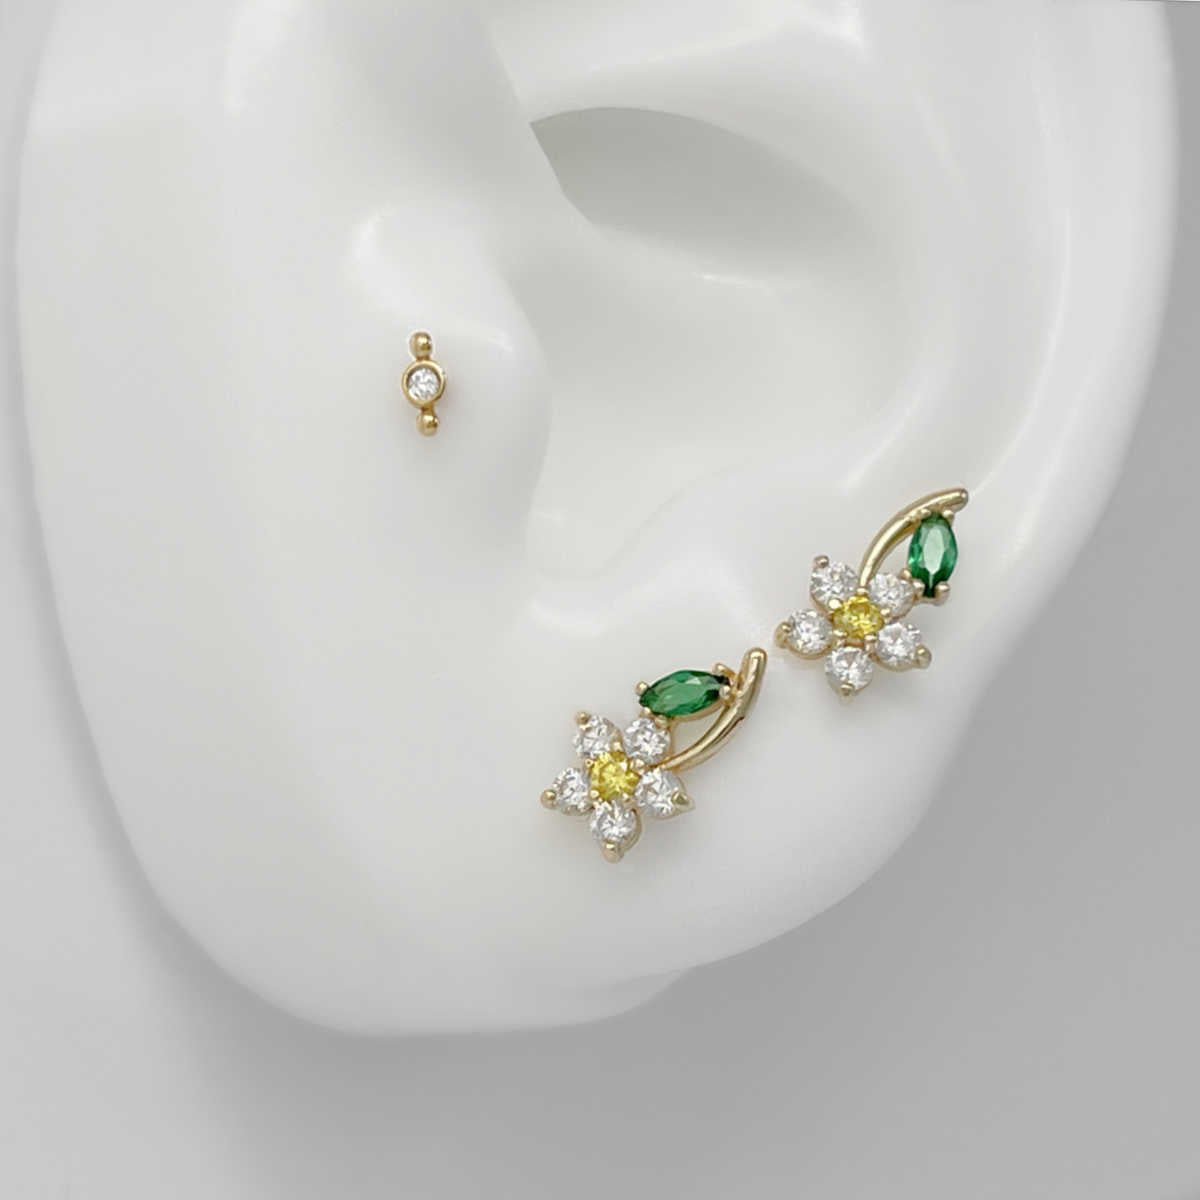 Flower Earrings on Ear, 14K Gold & Gemstone Studs, Two of Most Fine Jewelry